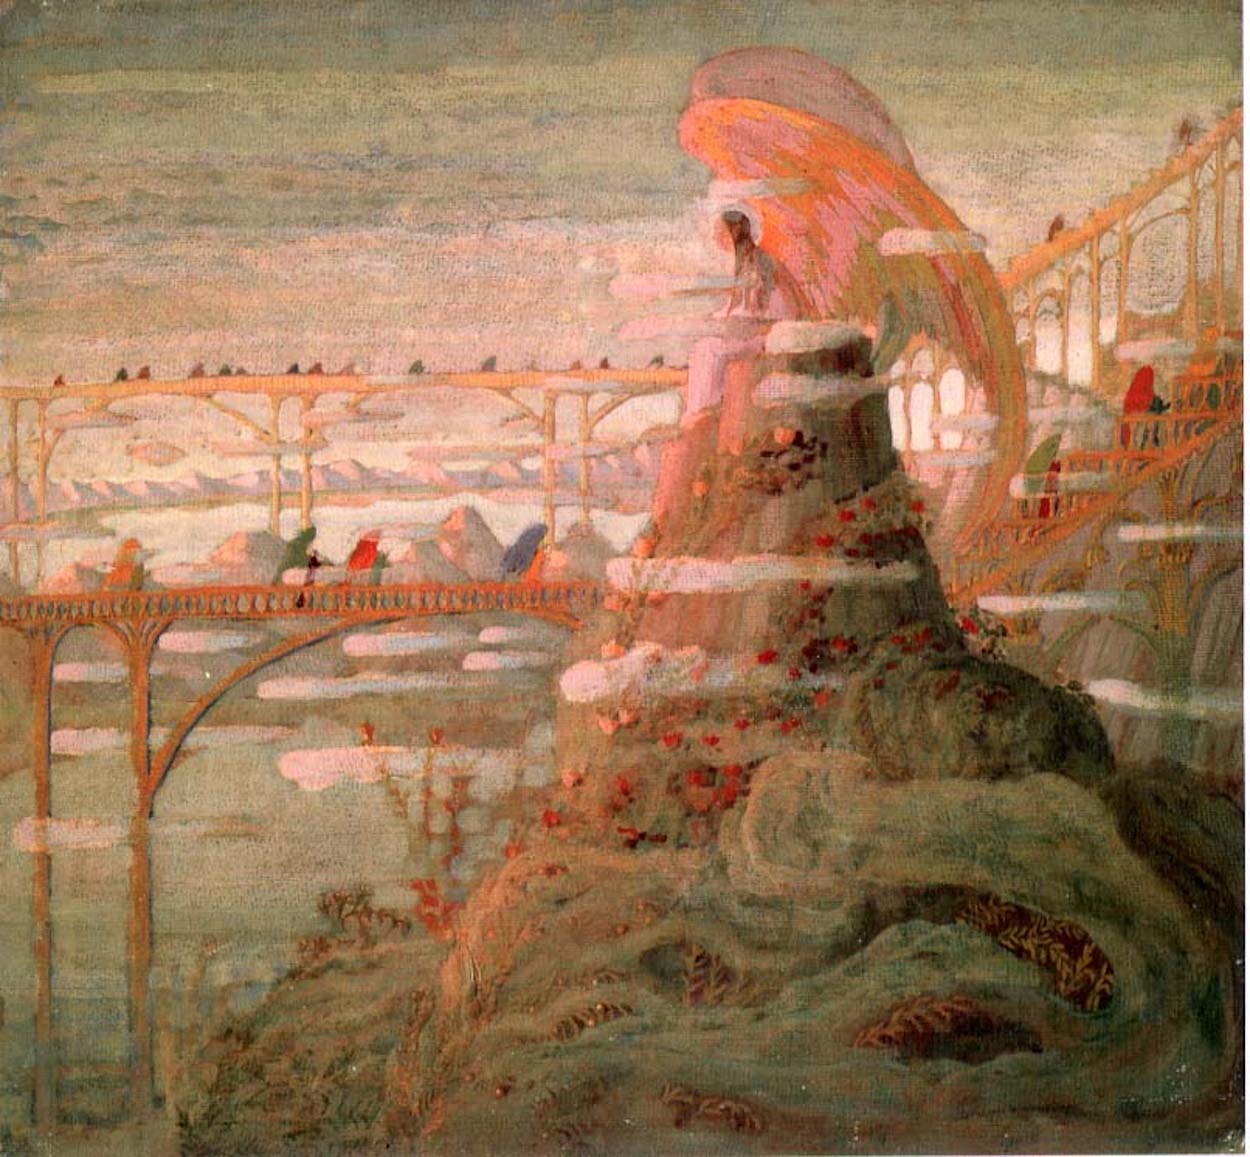 Engel (Engel-Präludium) by Mikalojus Konstantinas Čiurlionis - 1909 - 50 x 53,7 cm Mikalojus-Konstantinos-Čiurlionis-Kunstmuseum